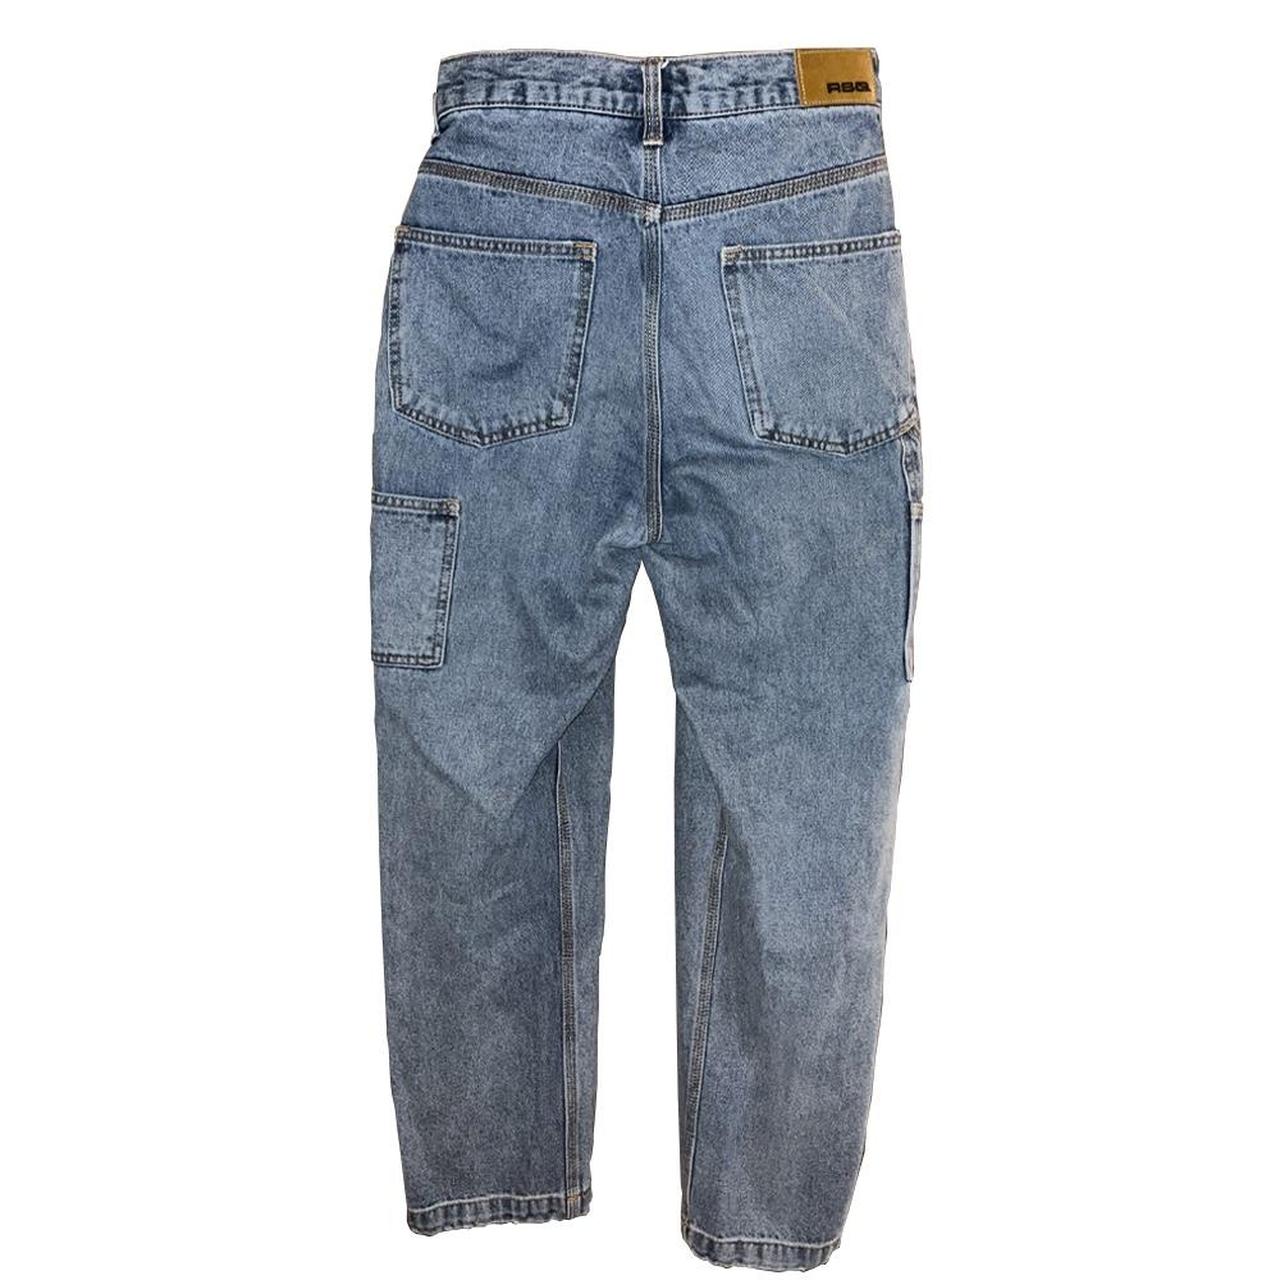 29x30 RSQ loose fit blue jeans - Depop